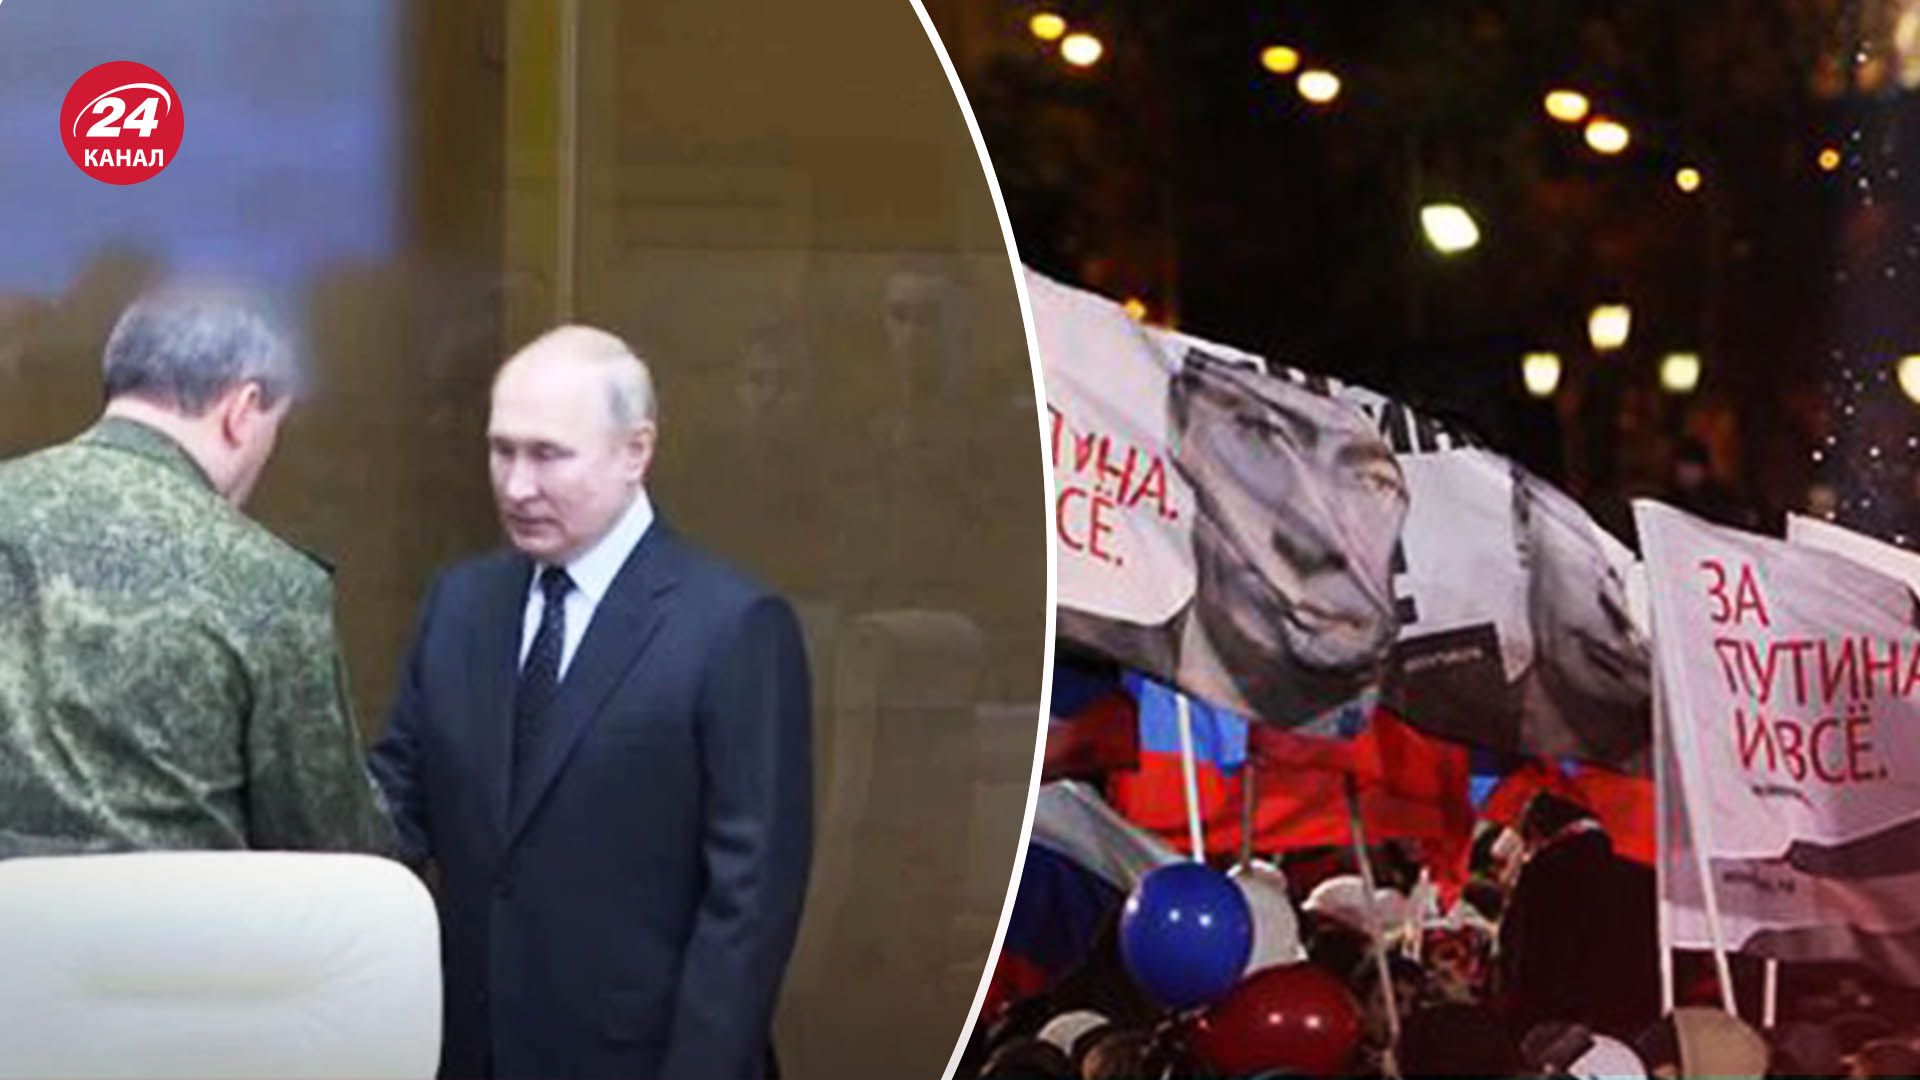 Путин приехал в Ростов - как это связано с предстоящими президентскими выборами - 24 Канал